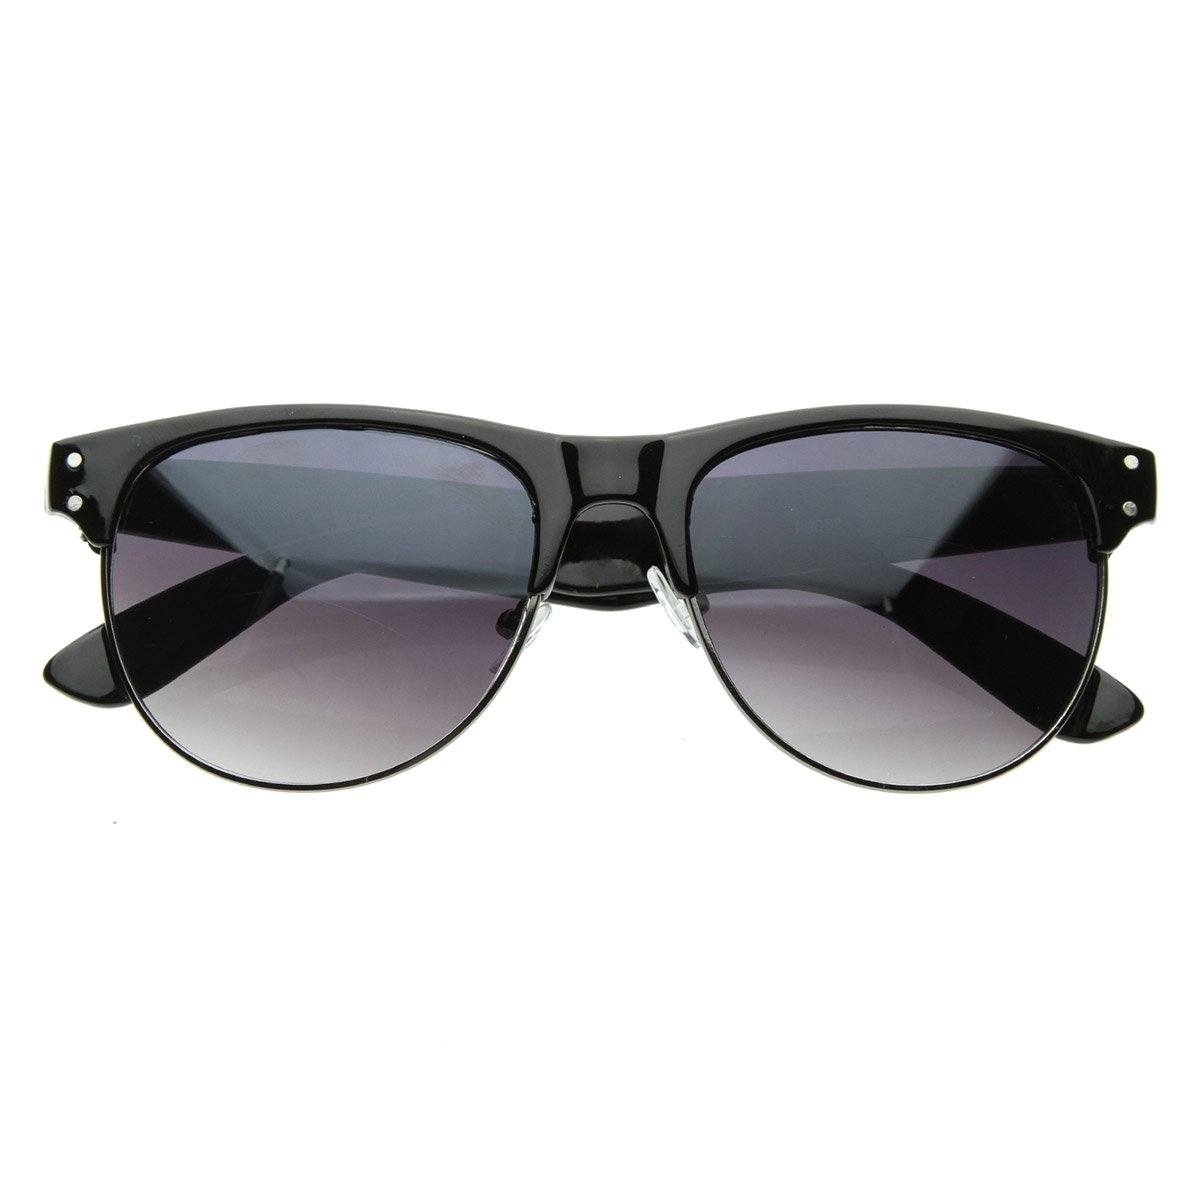 Vintage Inspired Retro Half Frame Horn Rimmed Horn Rimmed Style Sunglasses - Shiny Tortoise